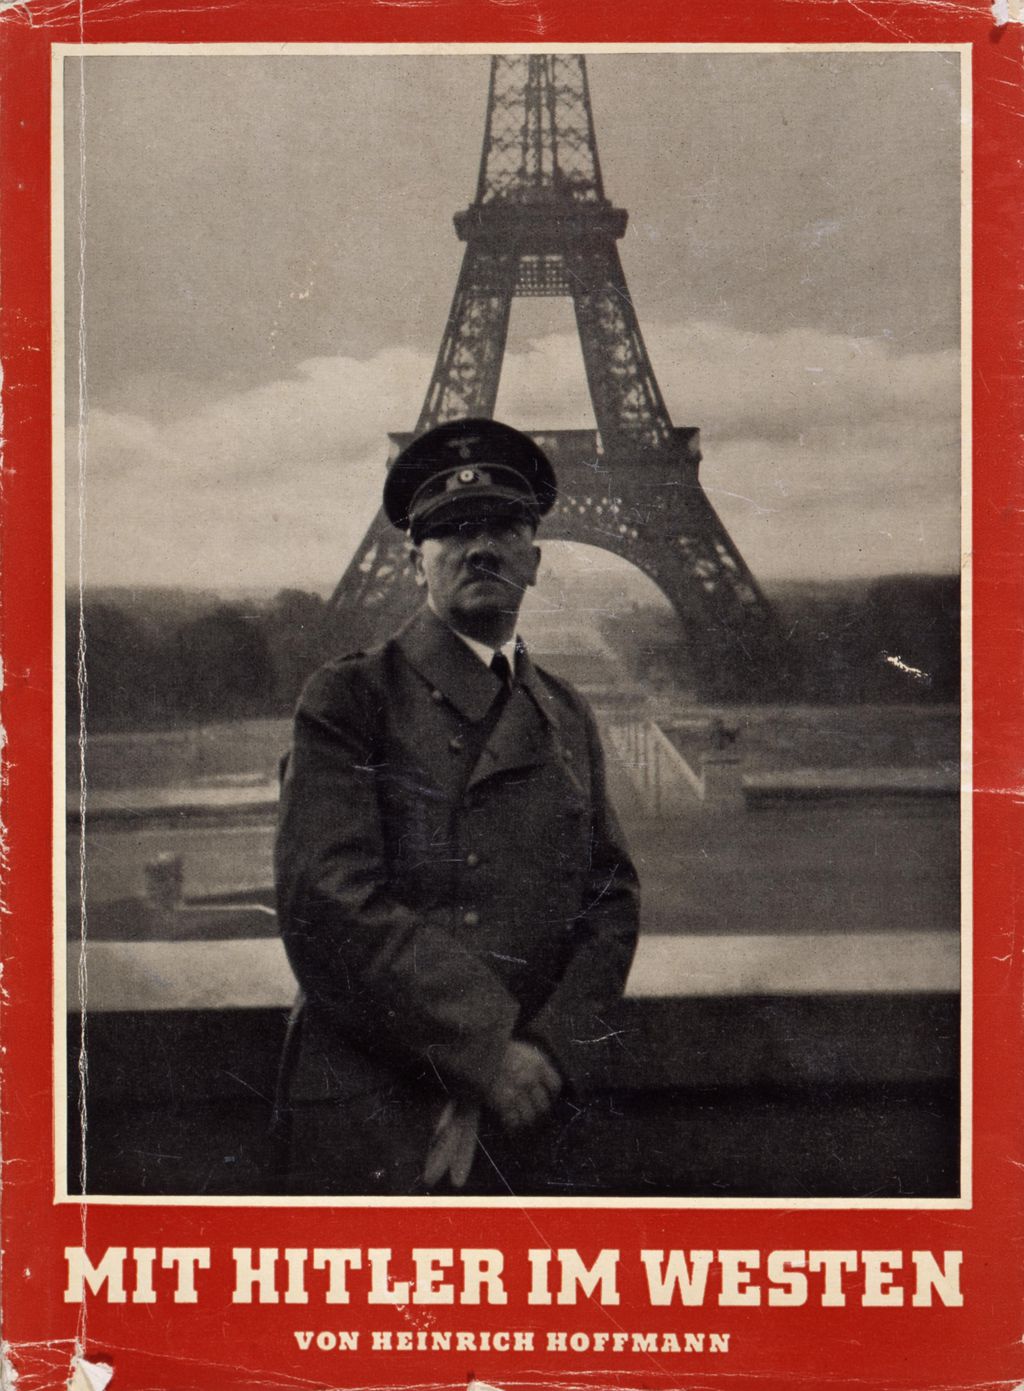 Exponat: Bildband: "Mit Hitler im Westen", 1940